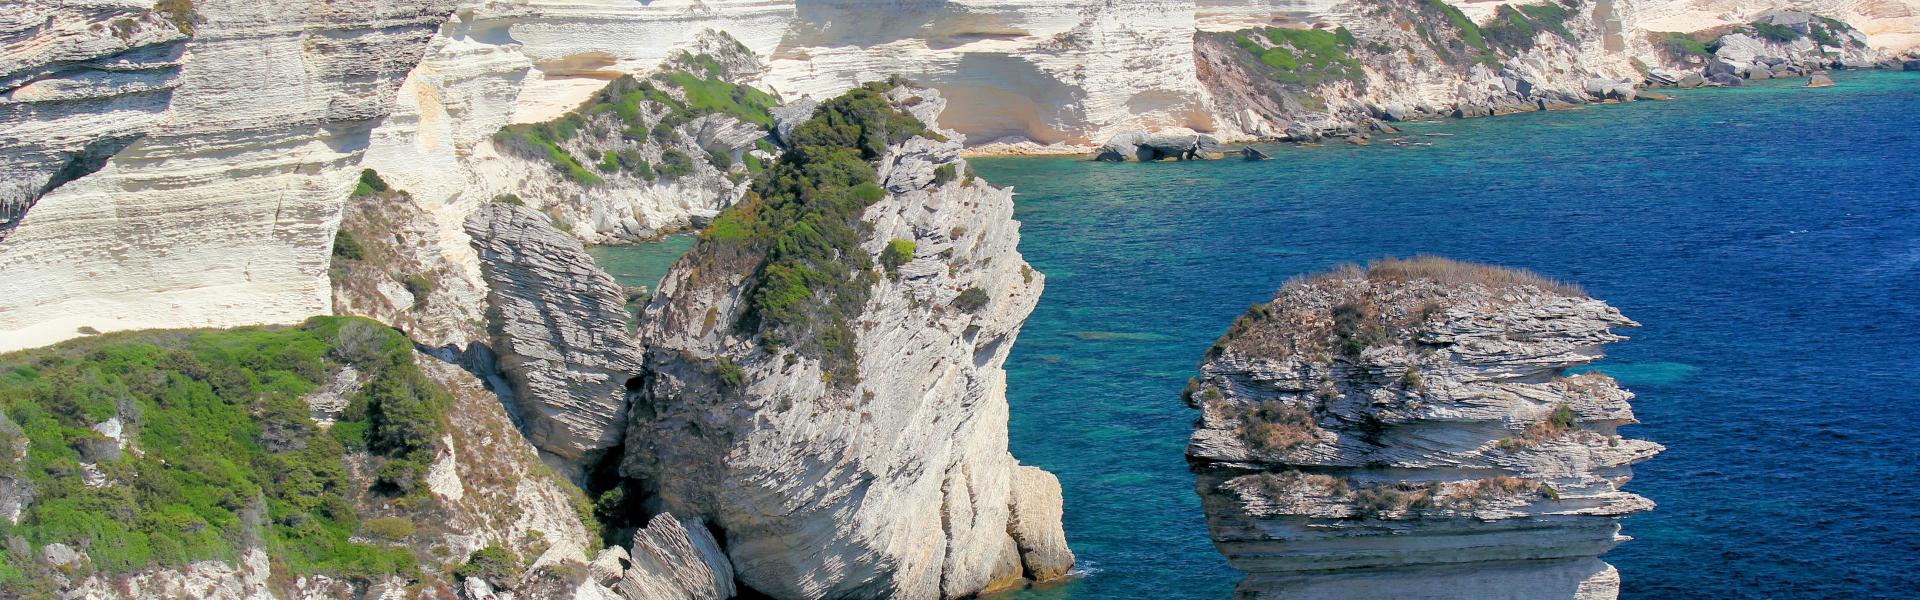 Location de vacances à Ocana - Corse-du-Sud - Amivac